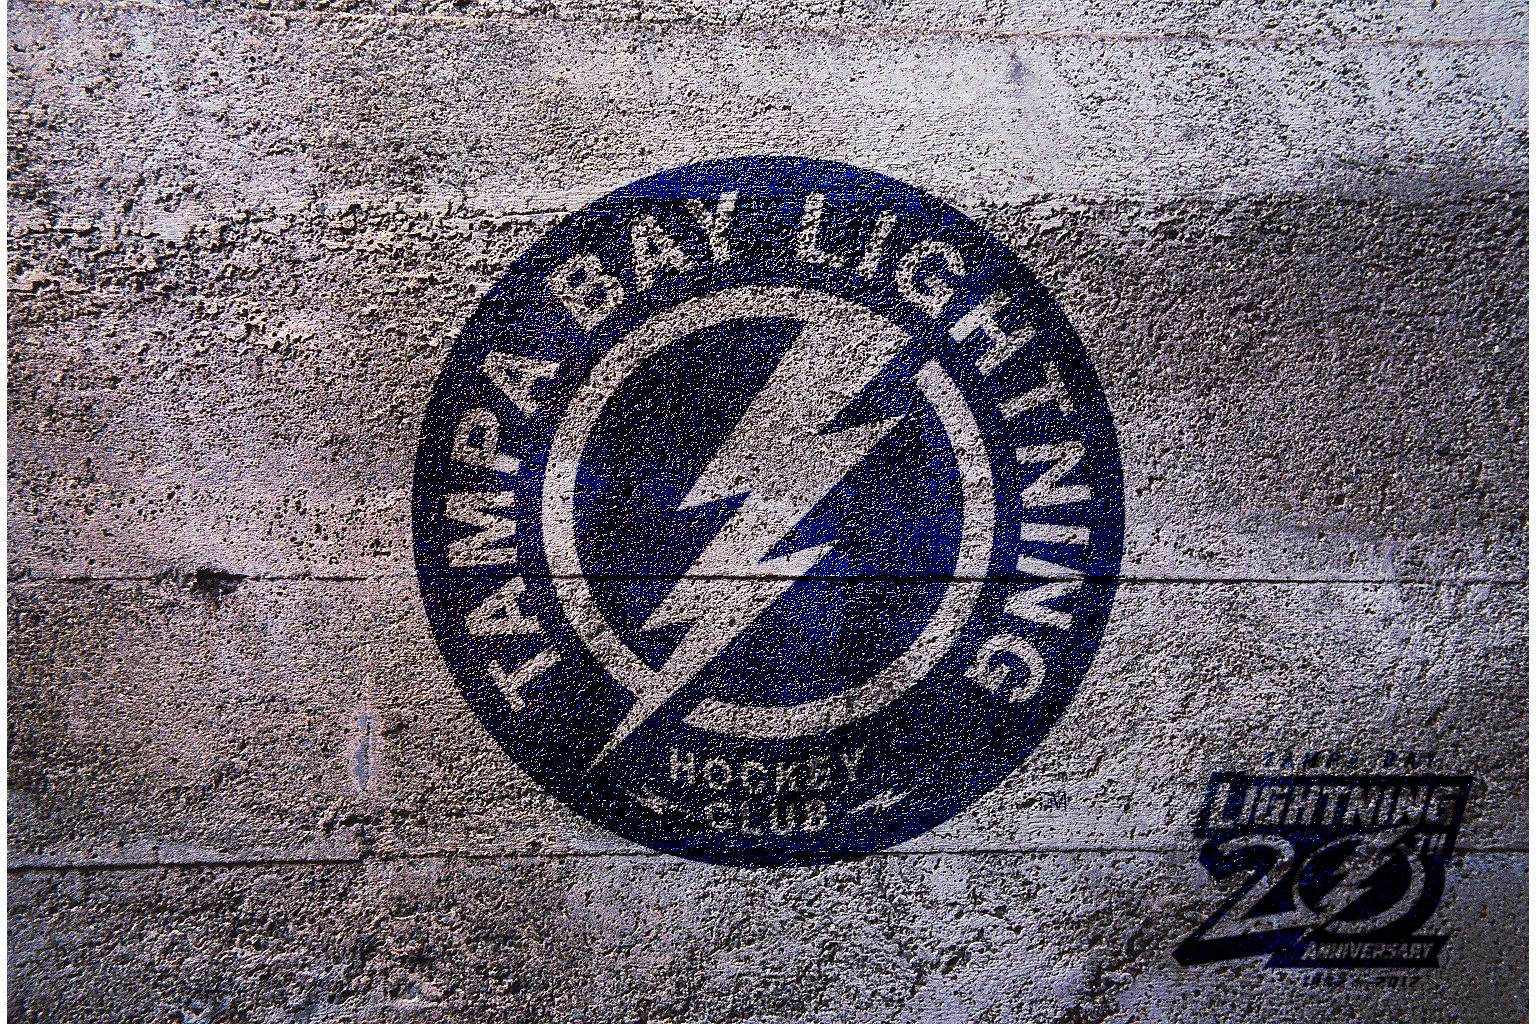 Ancient Blue Tampa Bay Lightning Wallpaper